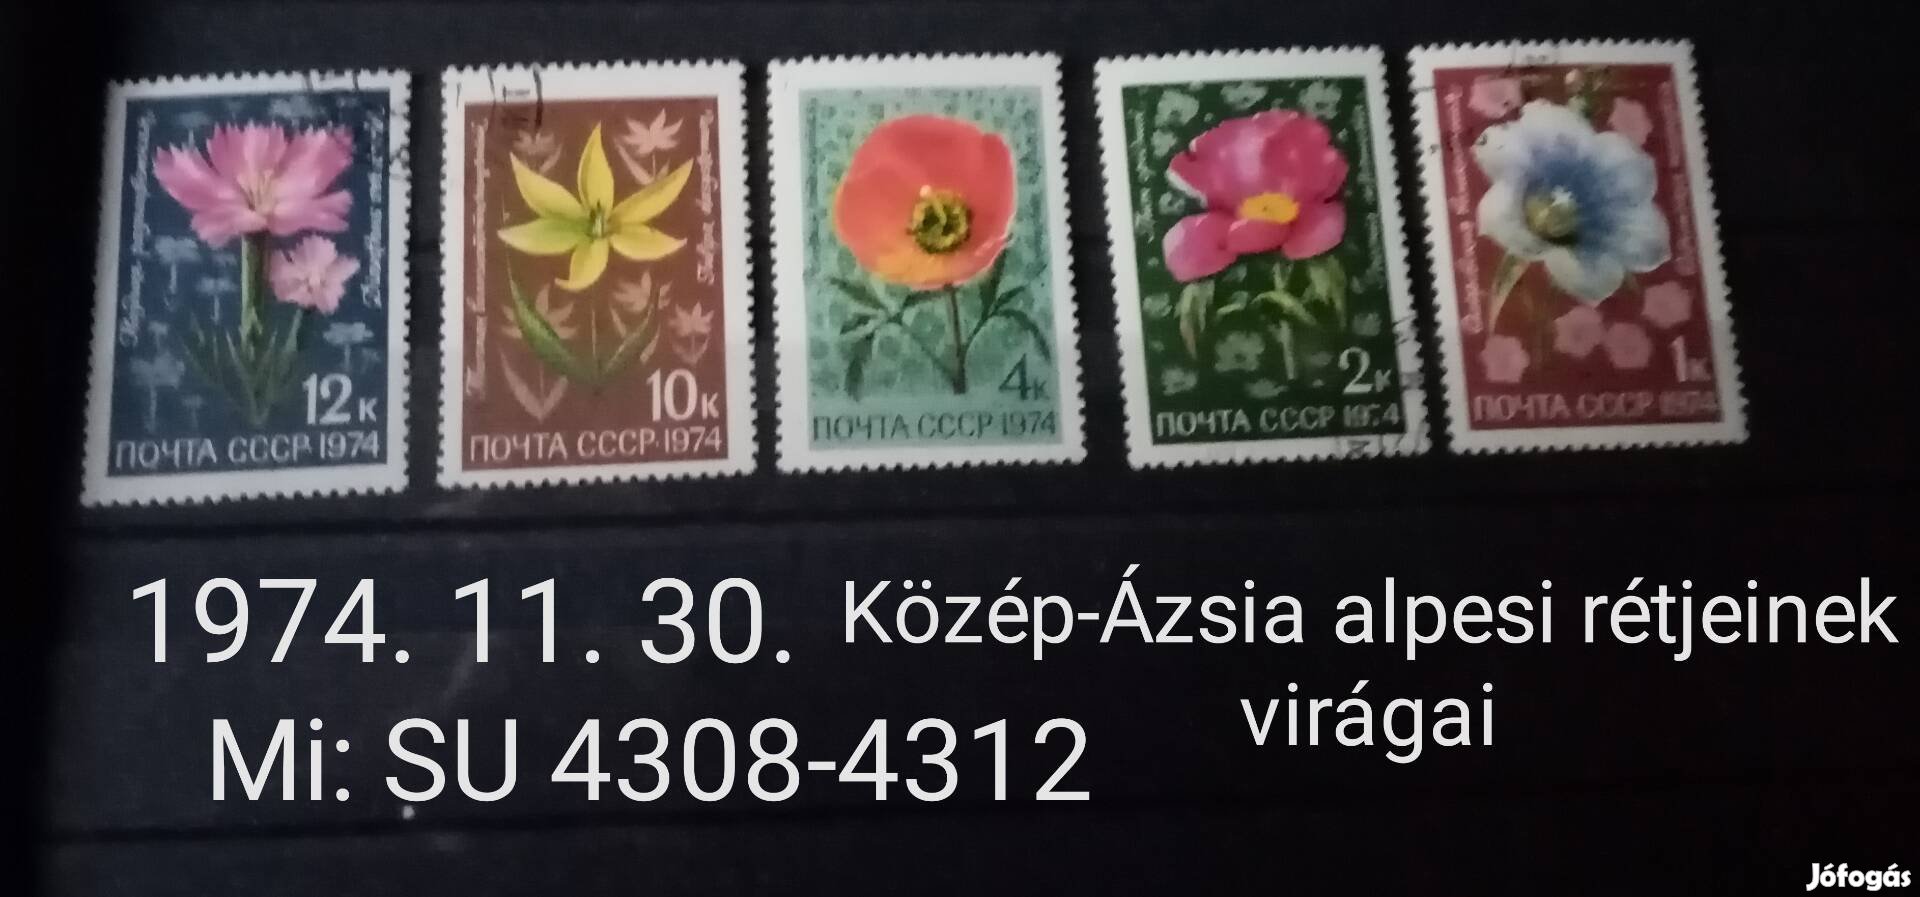 1974 alpesi virágok sor+ingyen posta